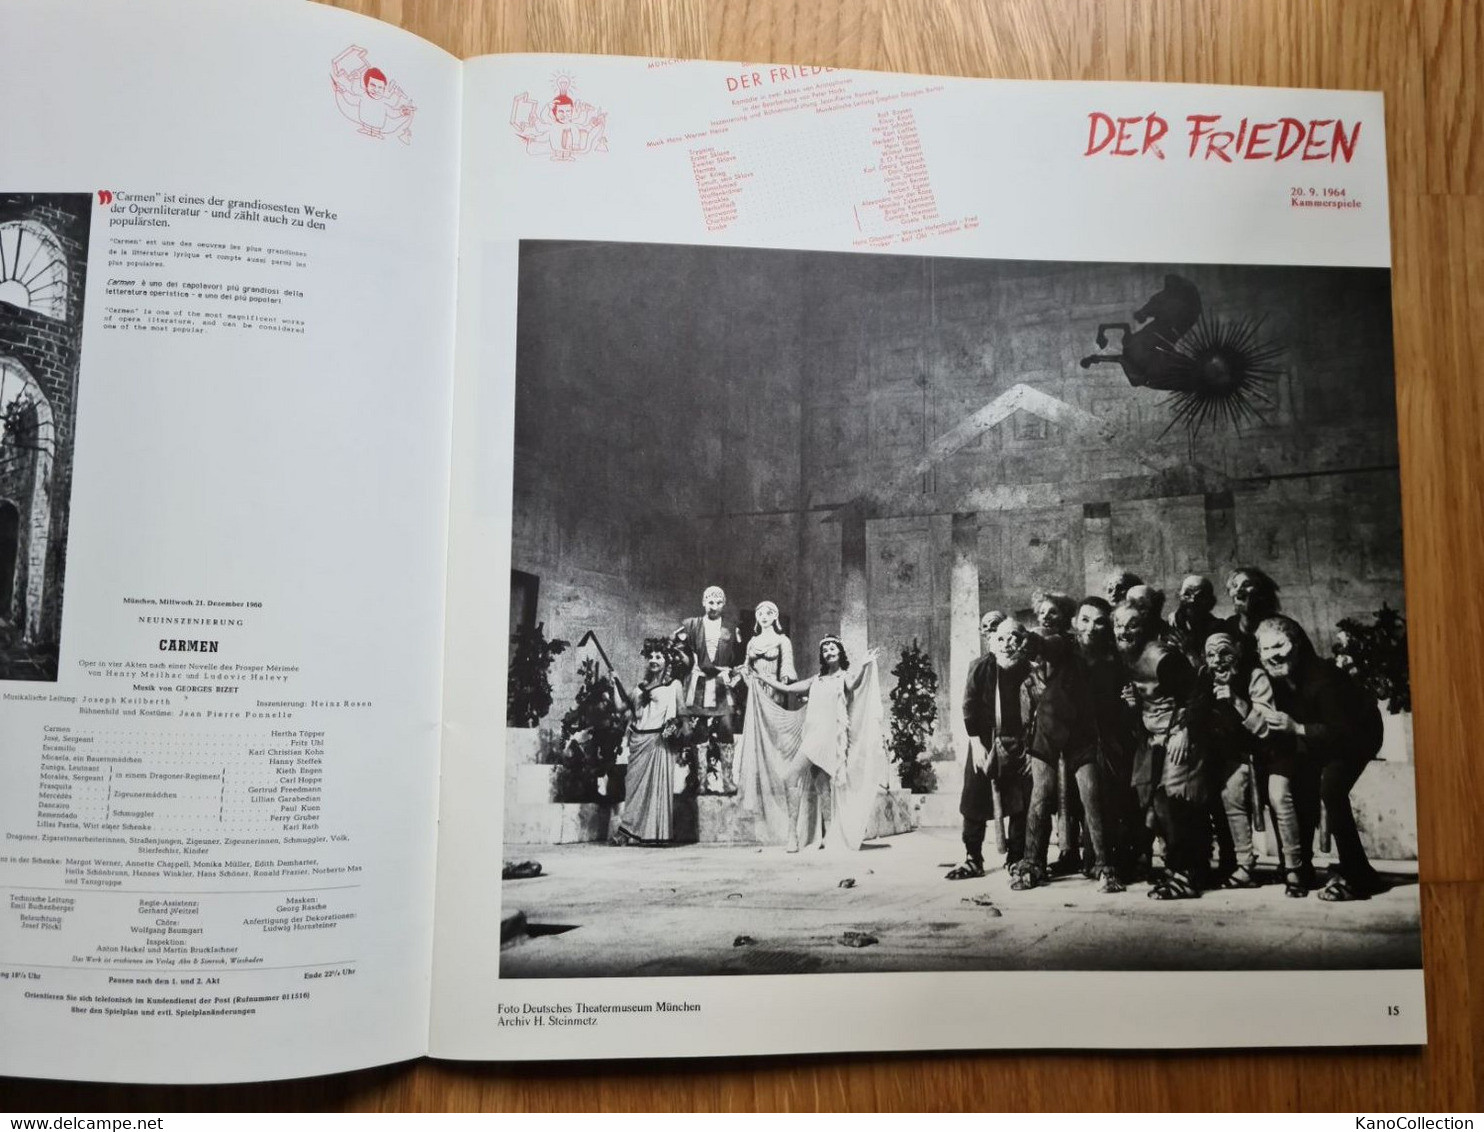 Oper: Ponelle In München 1952 Bis 1988 - Theater & Scripts